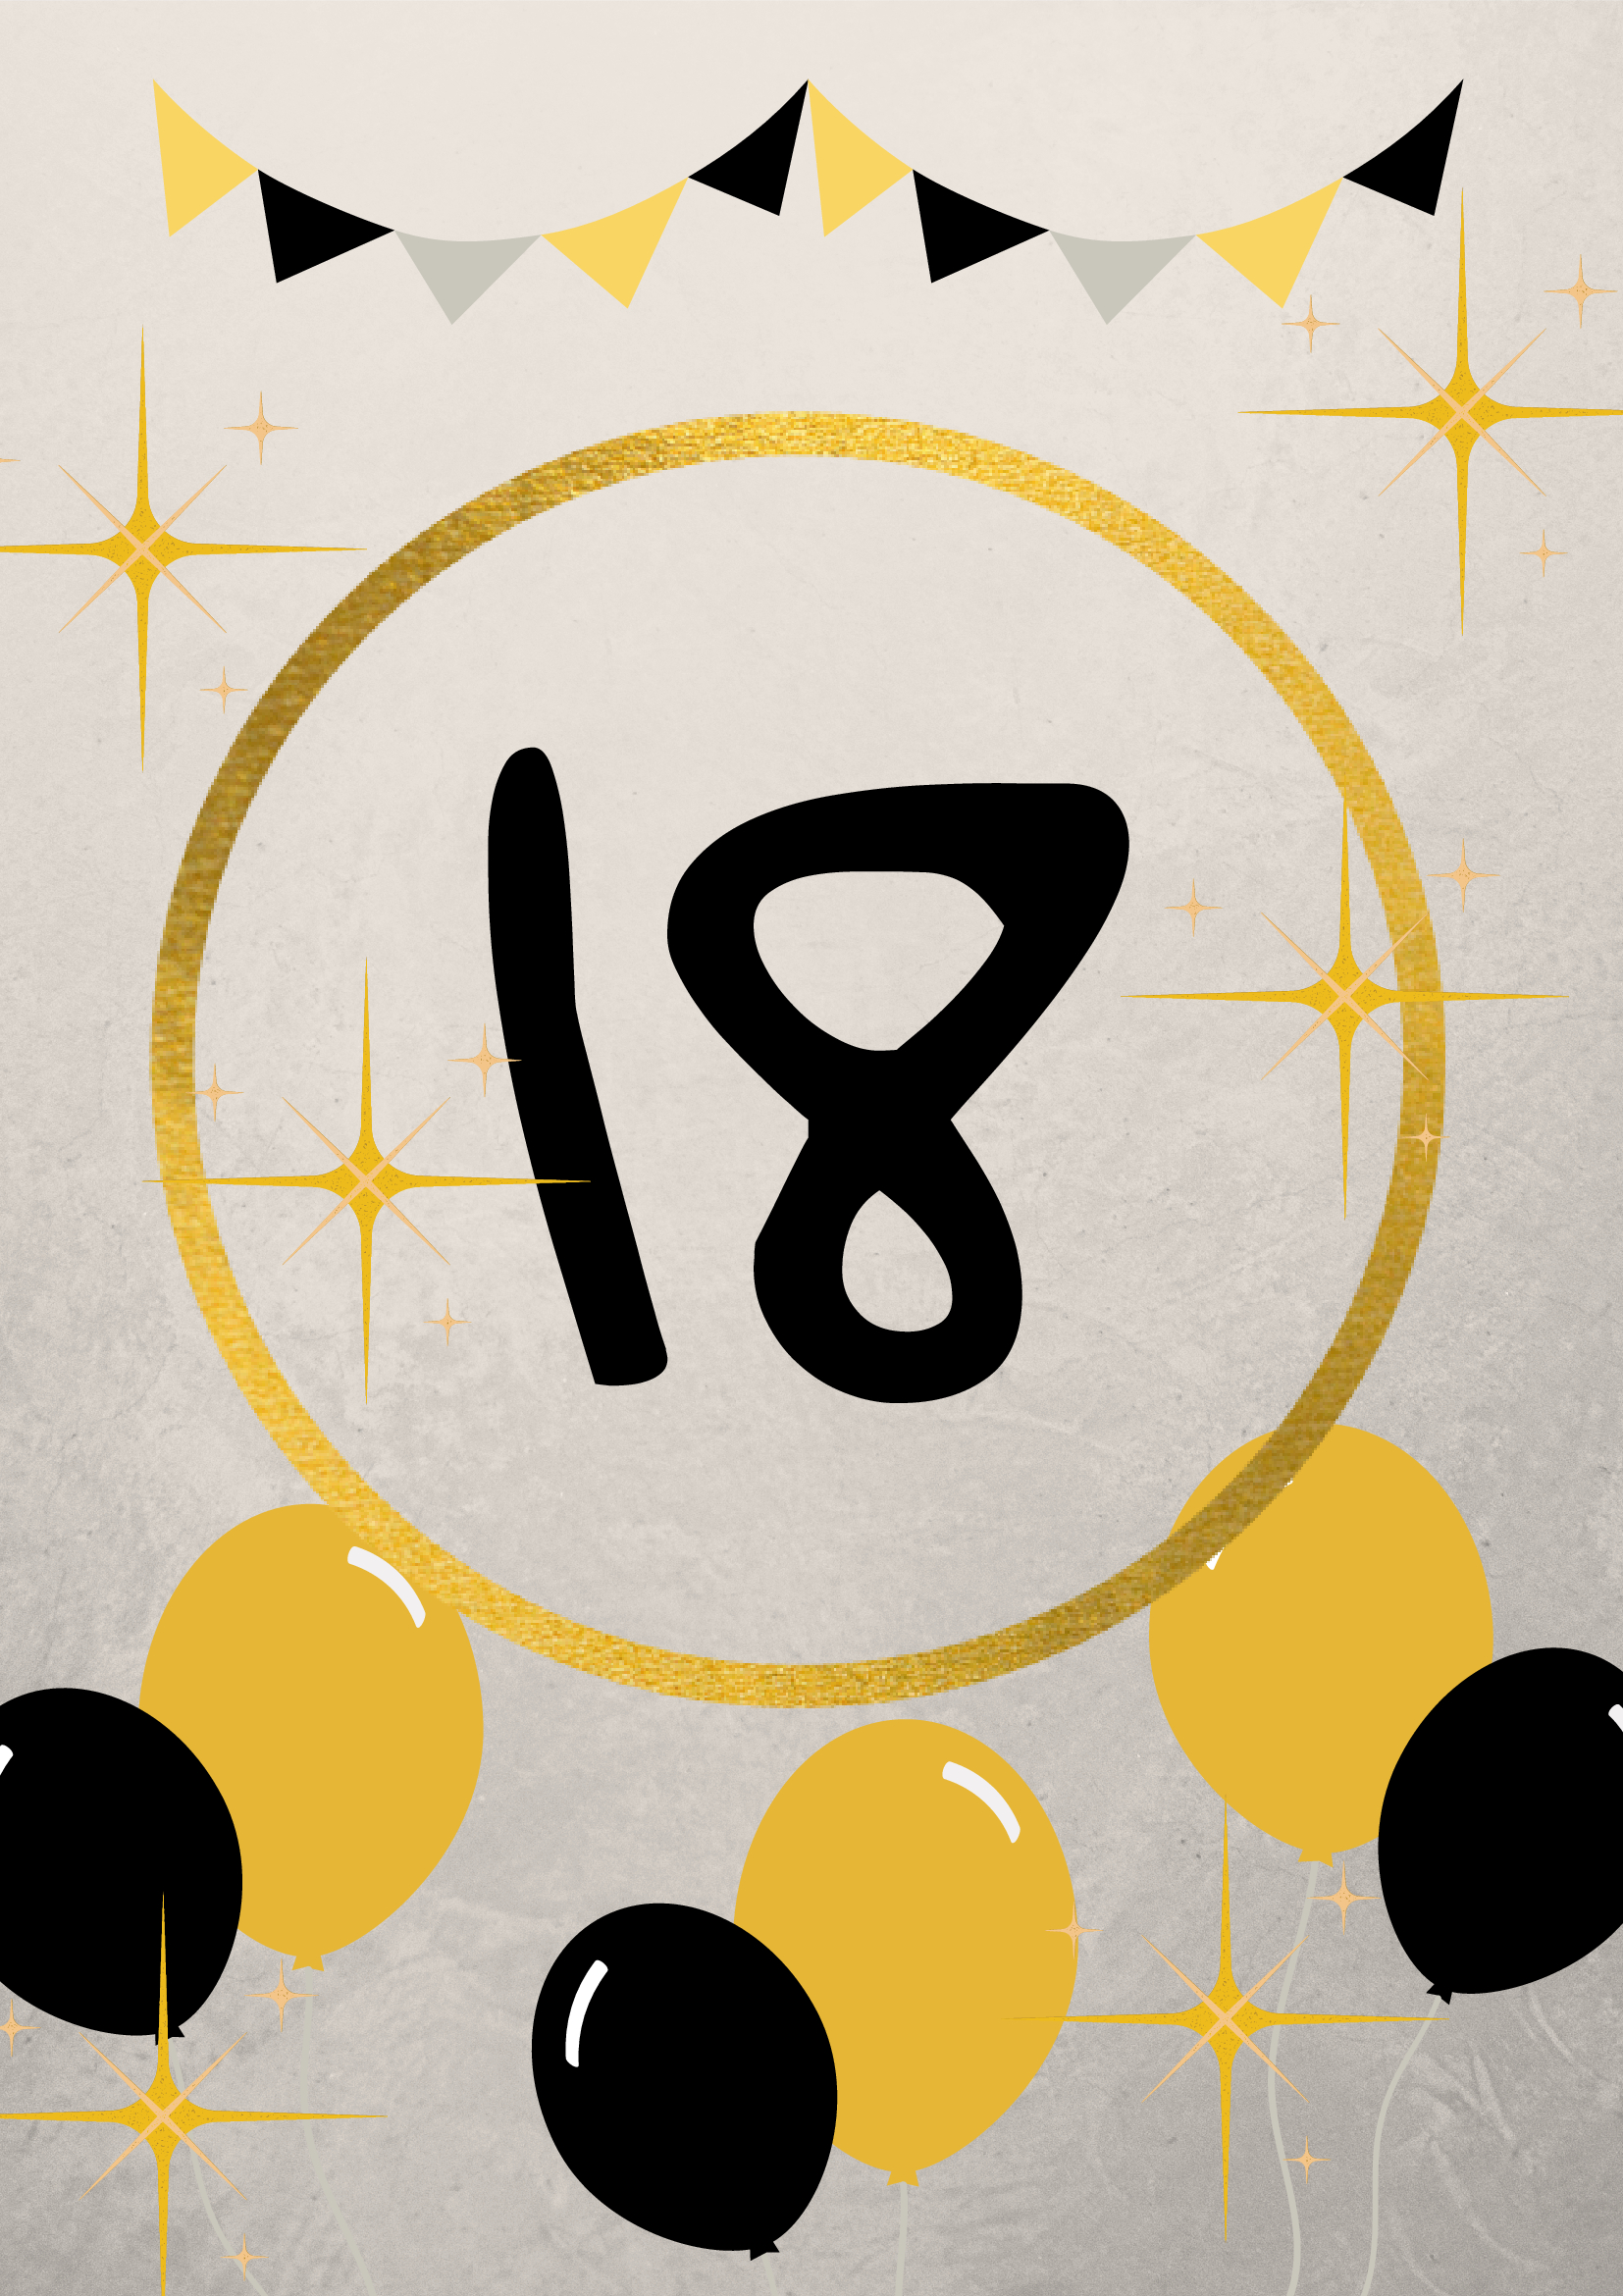 Niezapomniane 18. urodziny - ciekawe pomysły. Pierwsza część poradnika i inspiracja jak przygotować niesamowite 18. urodziny.